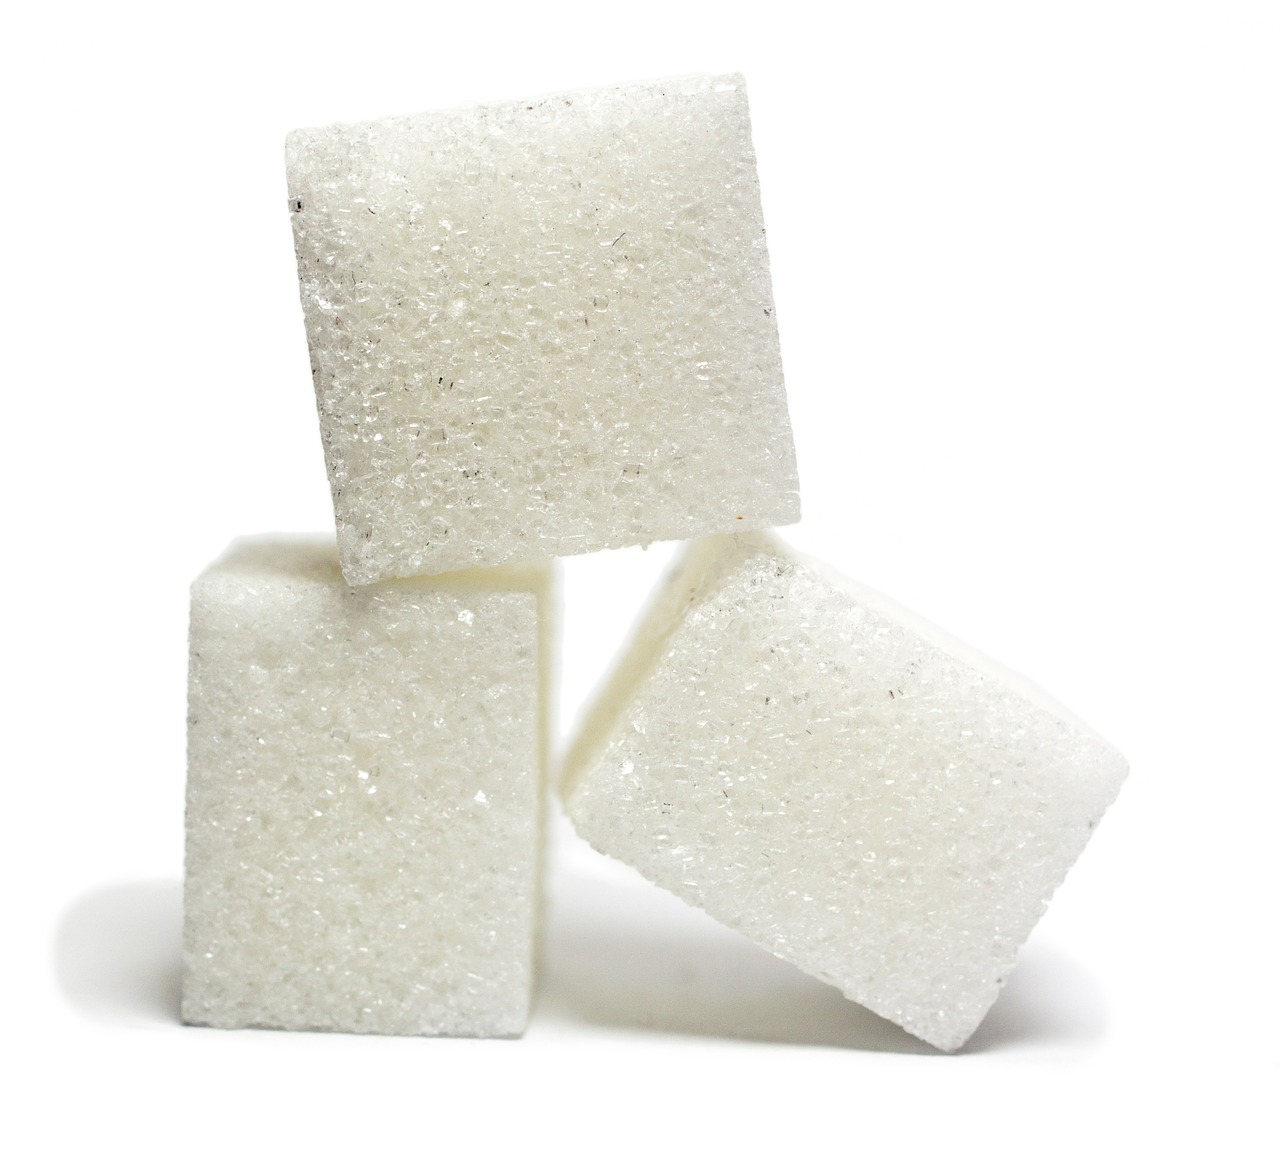 Zuckeralternativen - Welche Unterschiede gibt es?